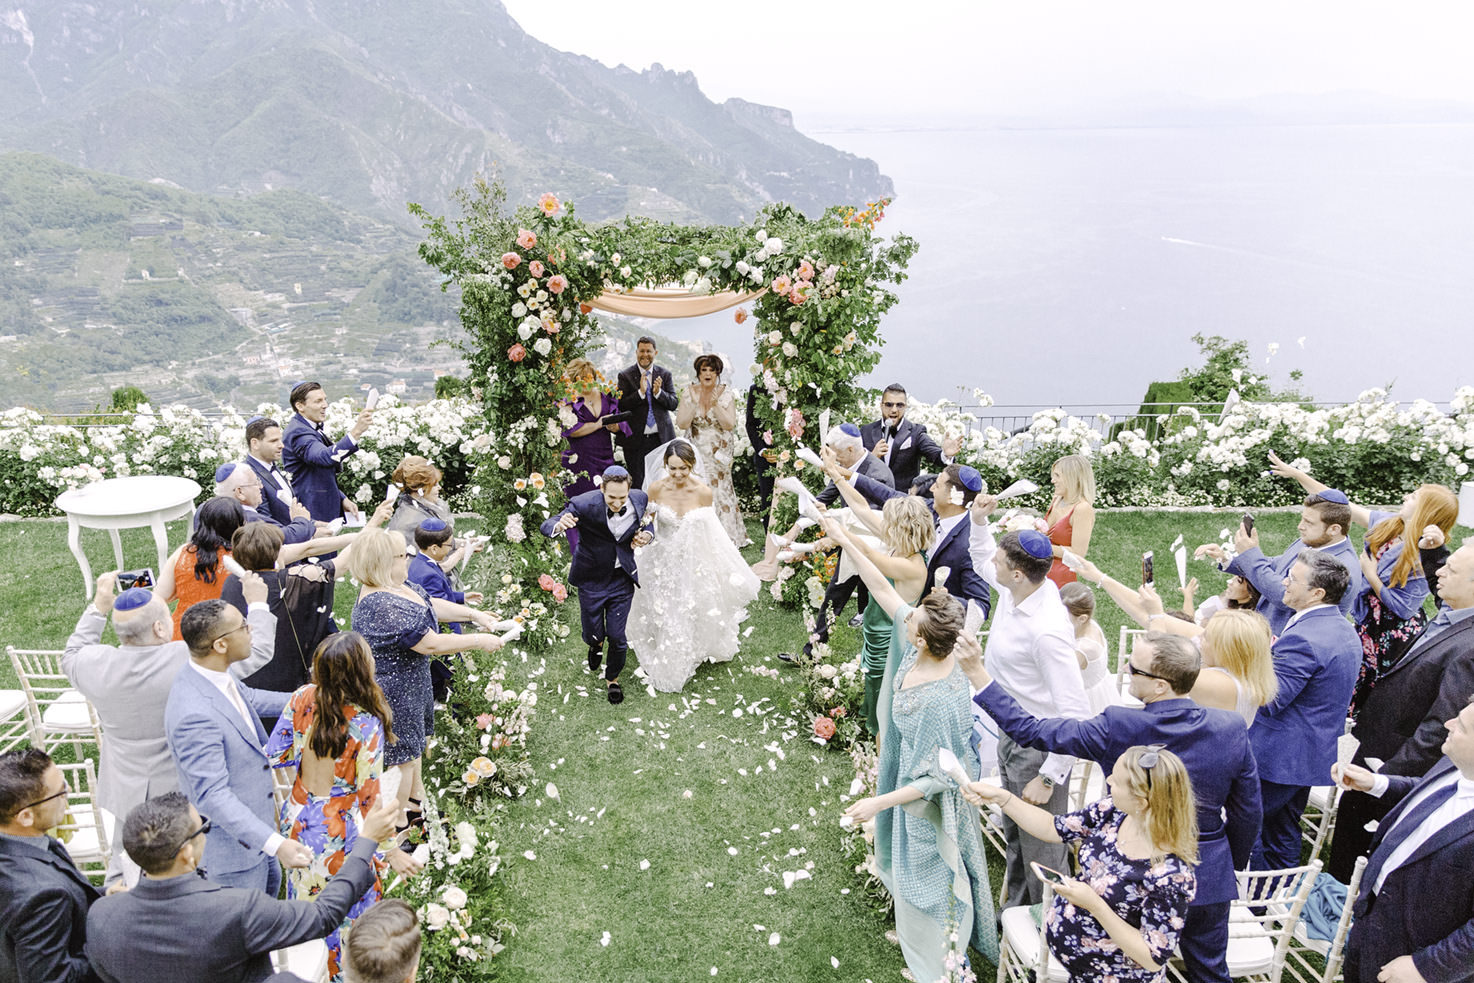 Jewish wedding ceremony in Italy